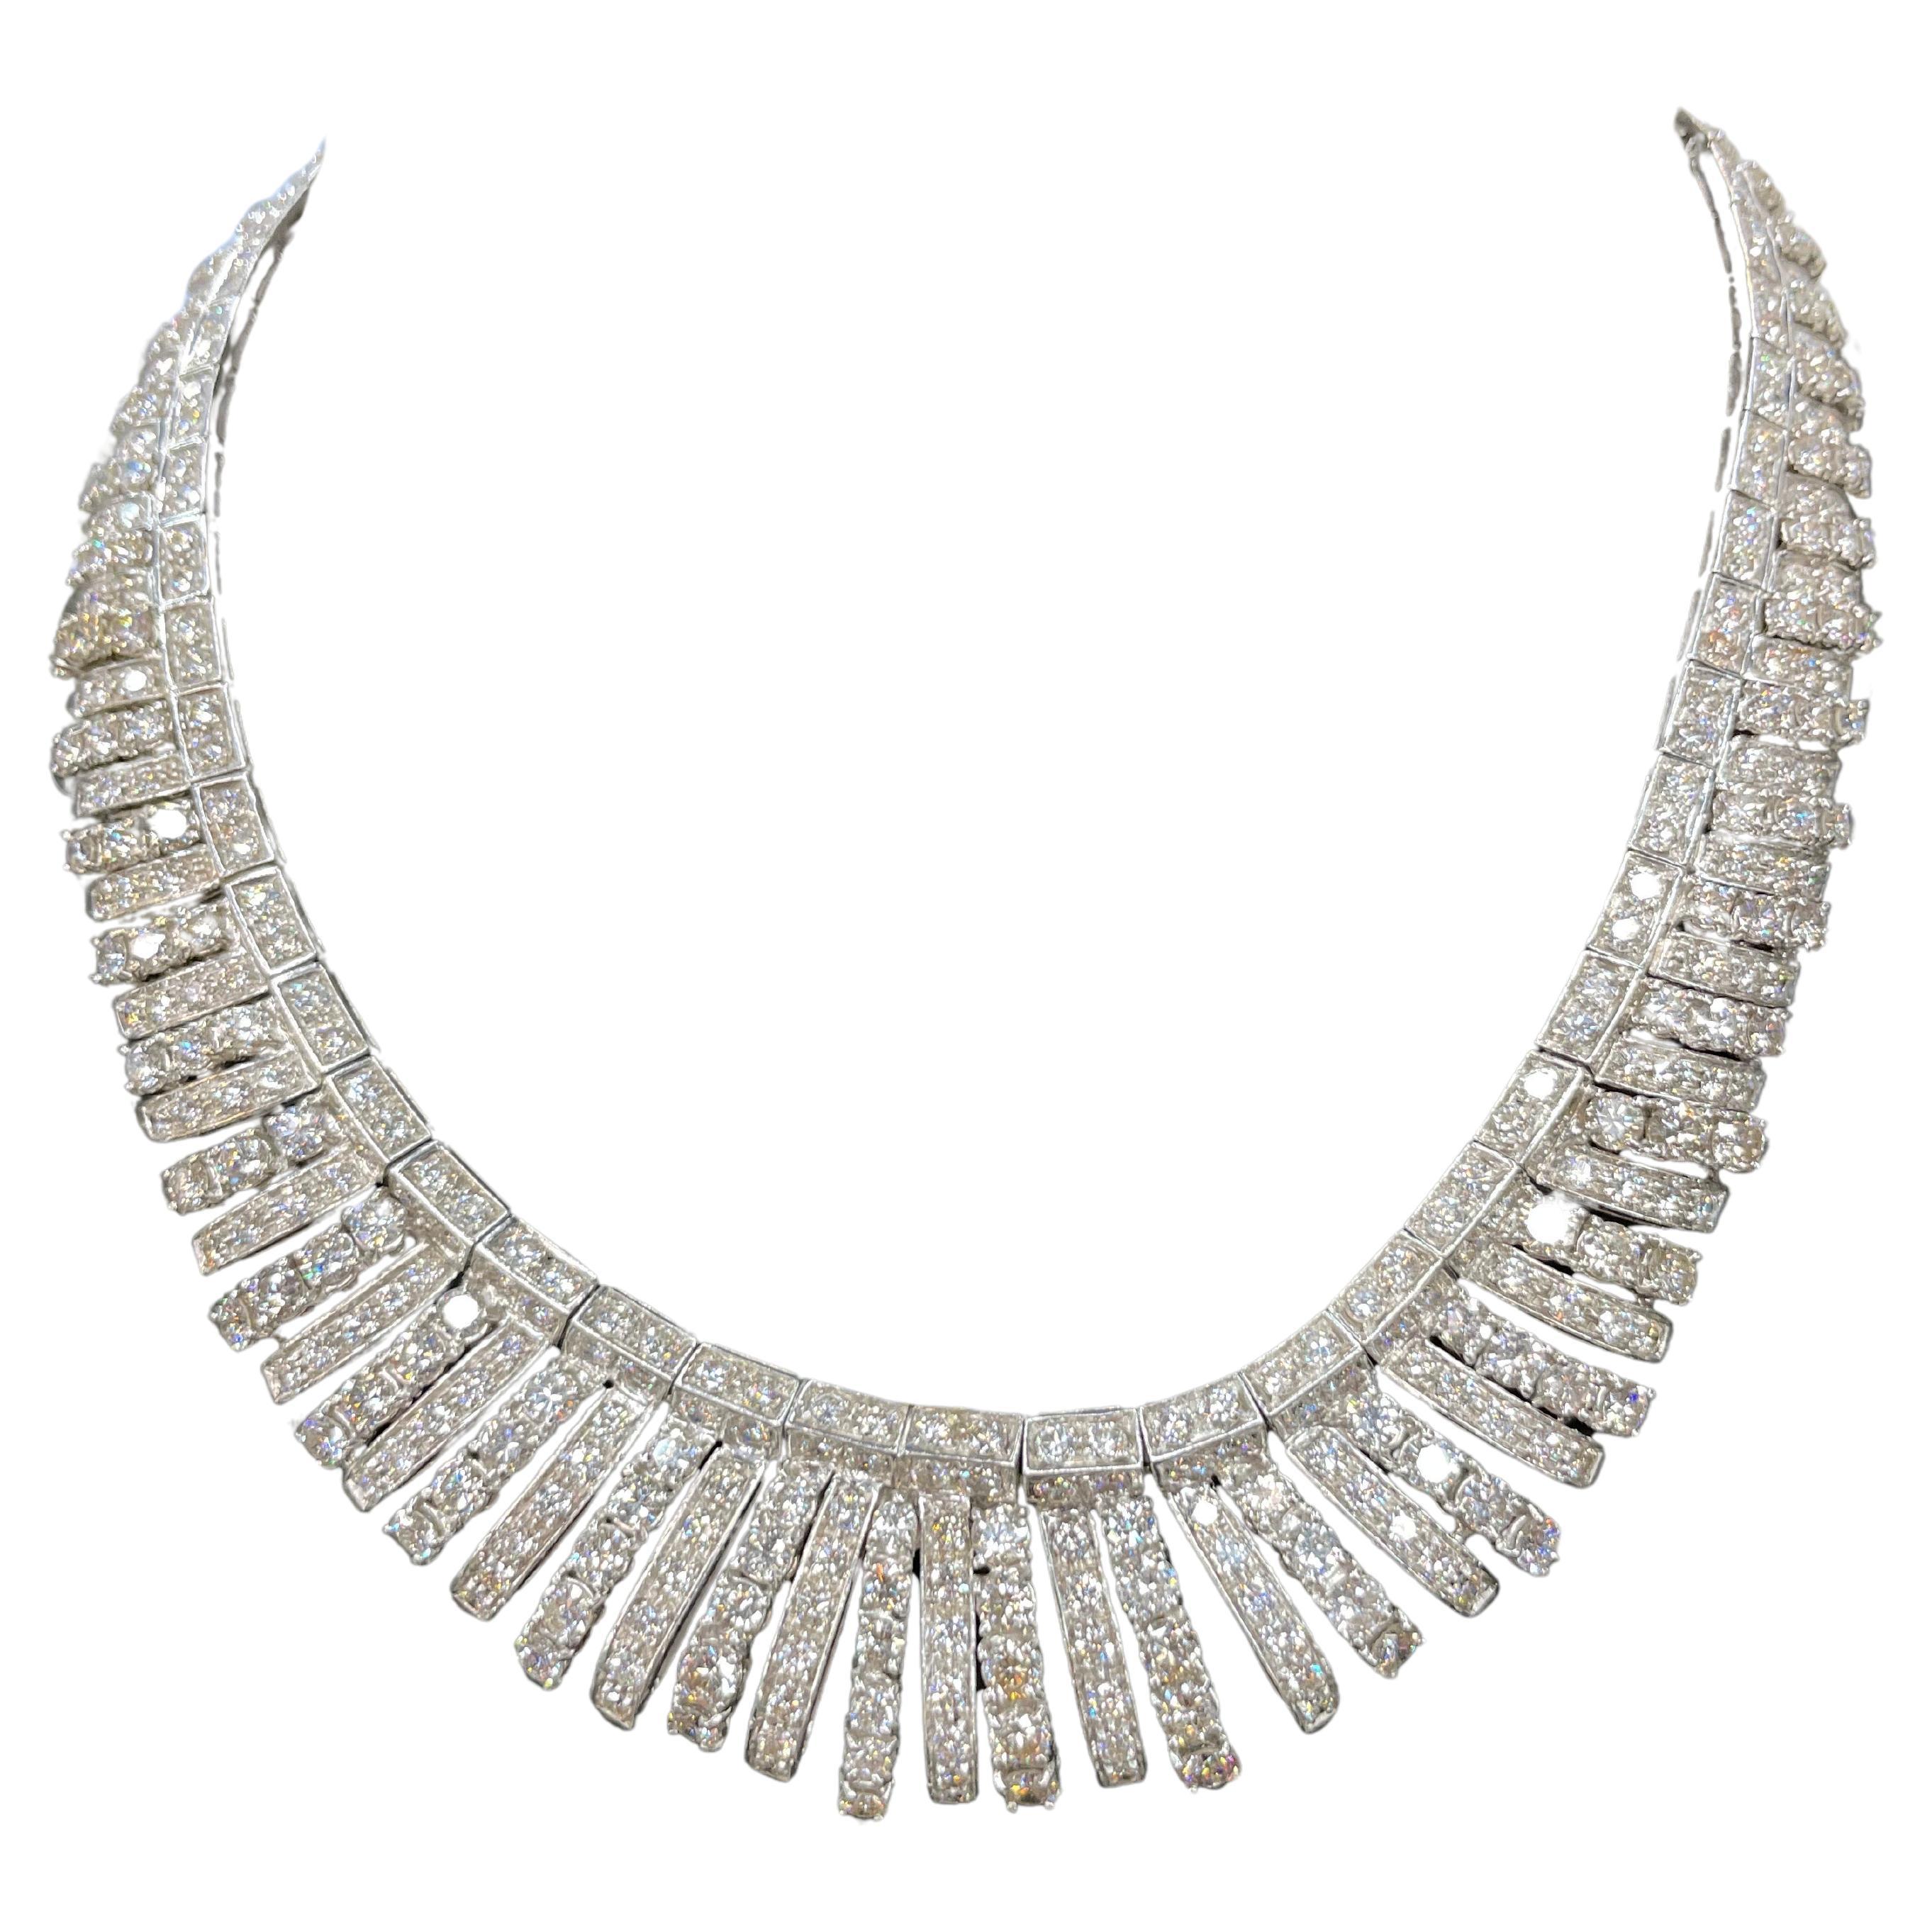 Vintage Diamond Collar Bib Necklace 66 Carats 18 Karat White Gold 113.5 Grams